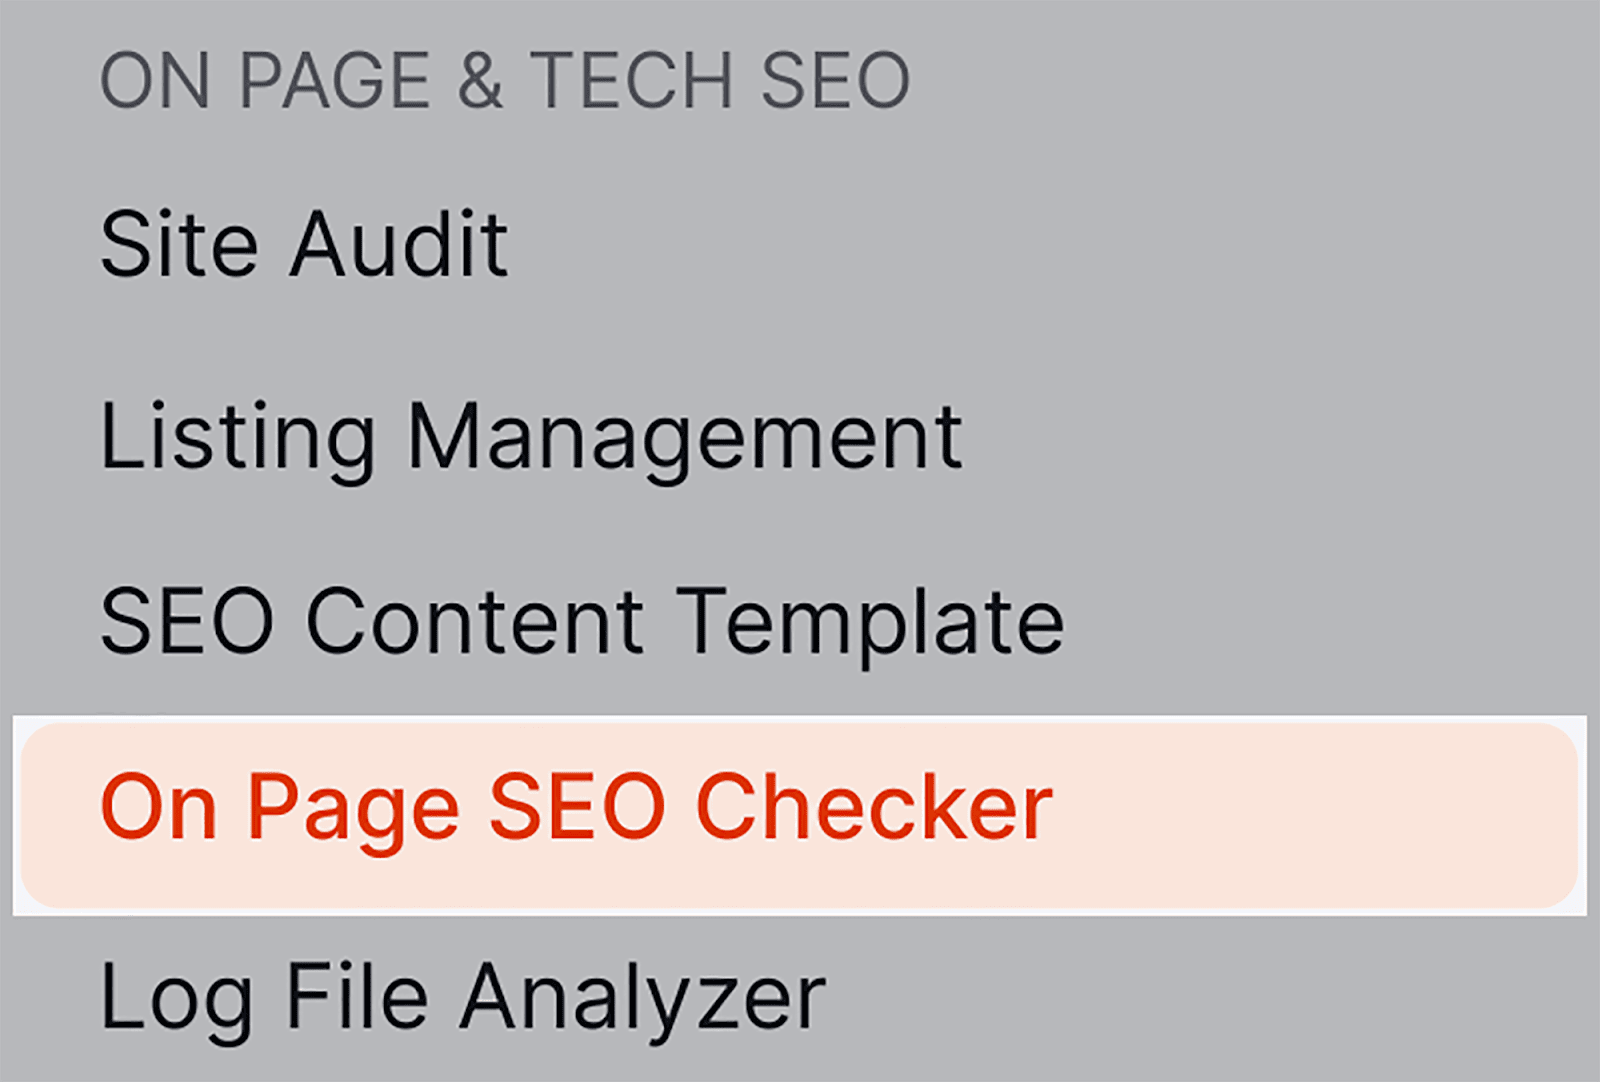 On Page SEO Checker